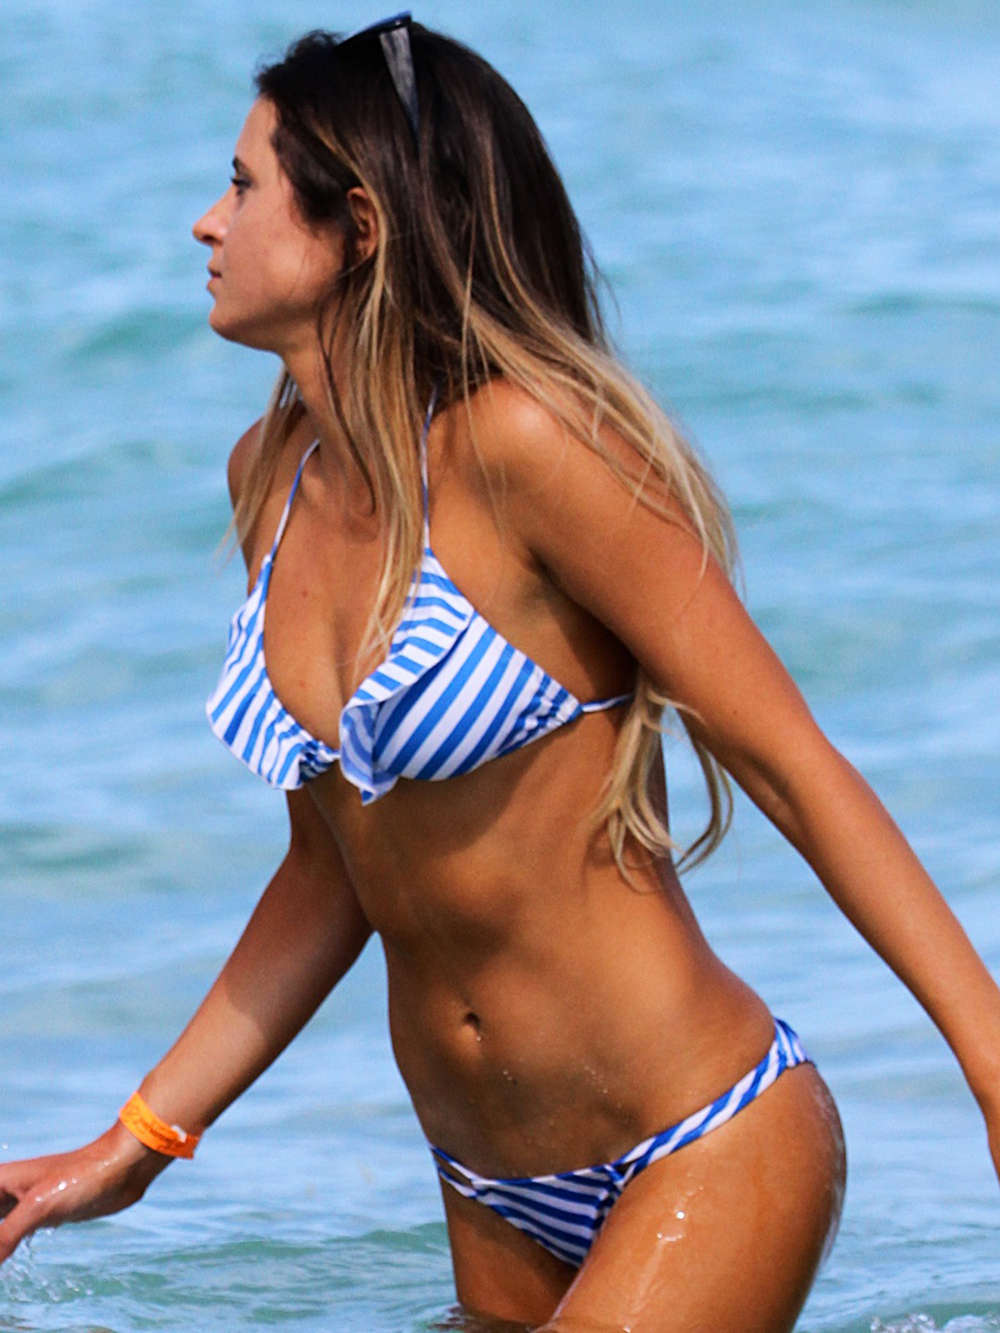 Anastasia Ashley - Wearing Bikini on Miami Beach. 